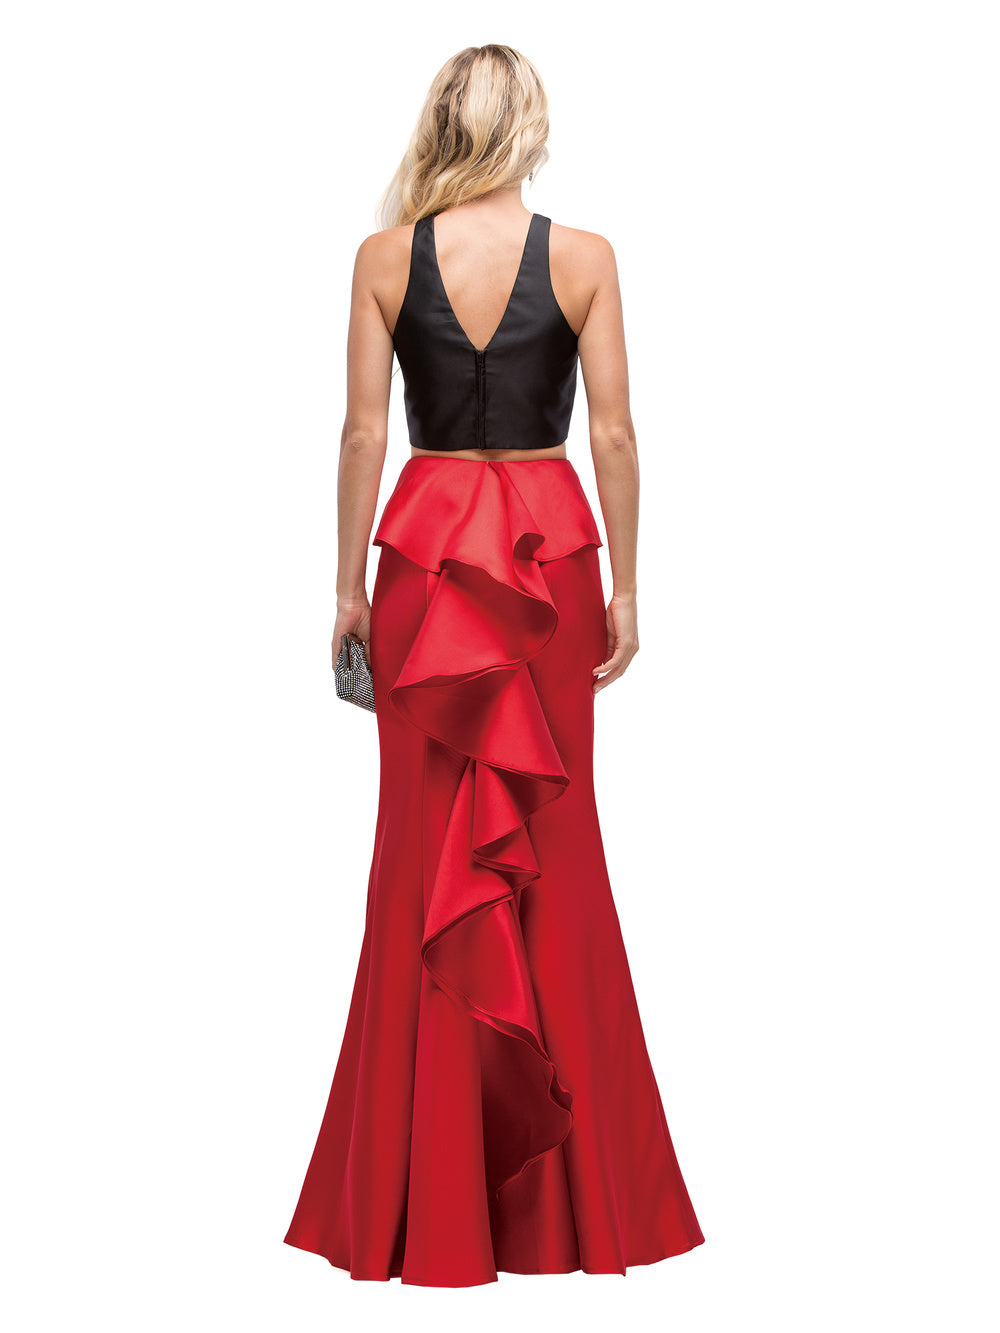 Dancing Queen - 9767 Two-Piece Halter Ruffled Mermaid Dress In Red